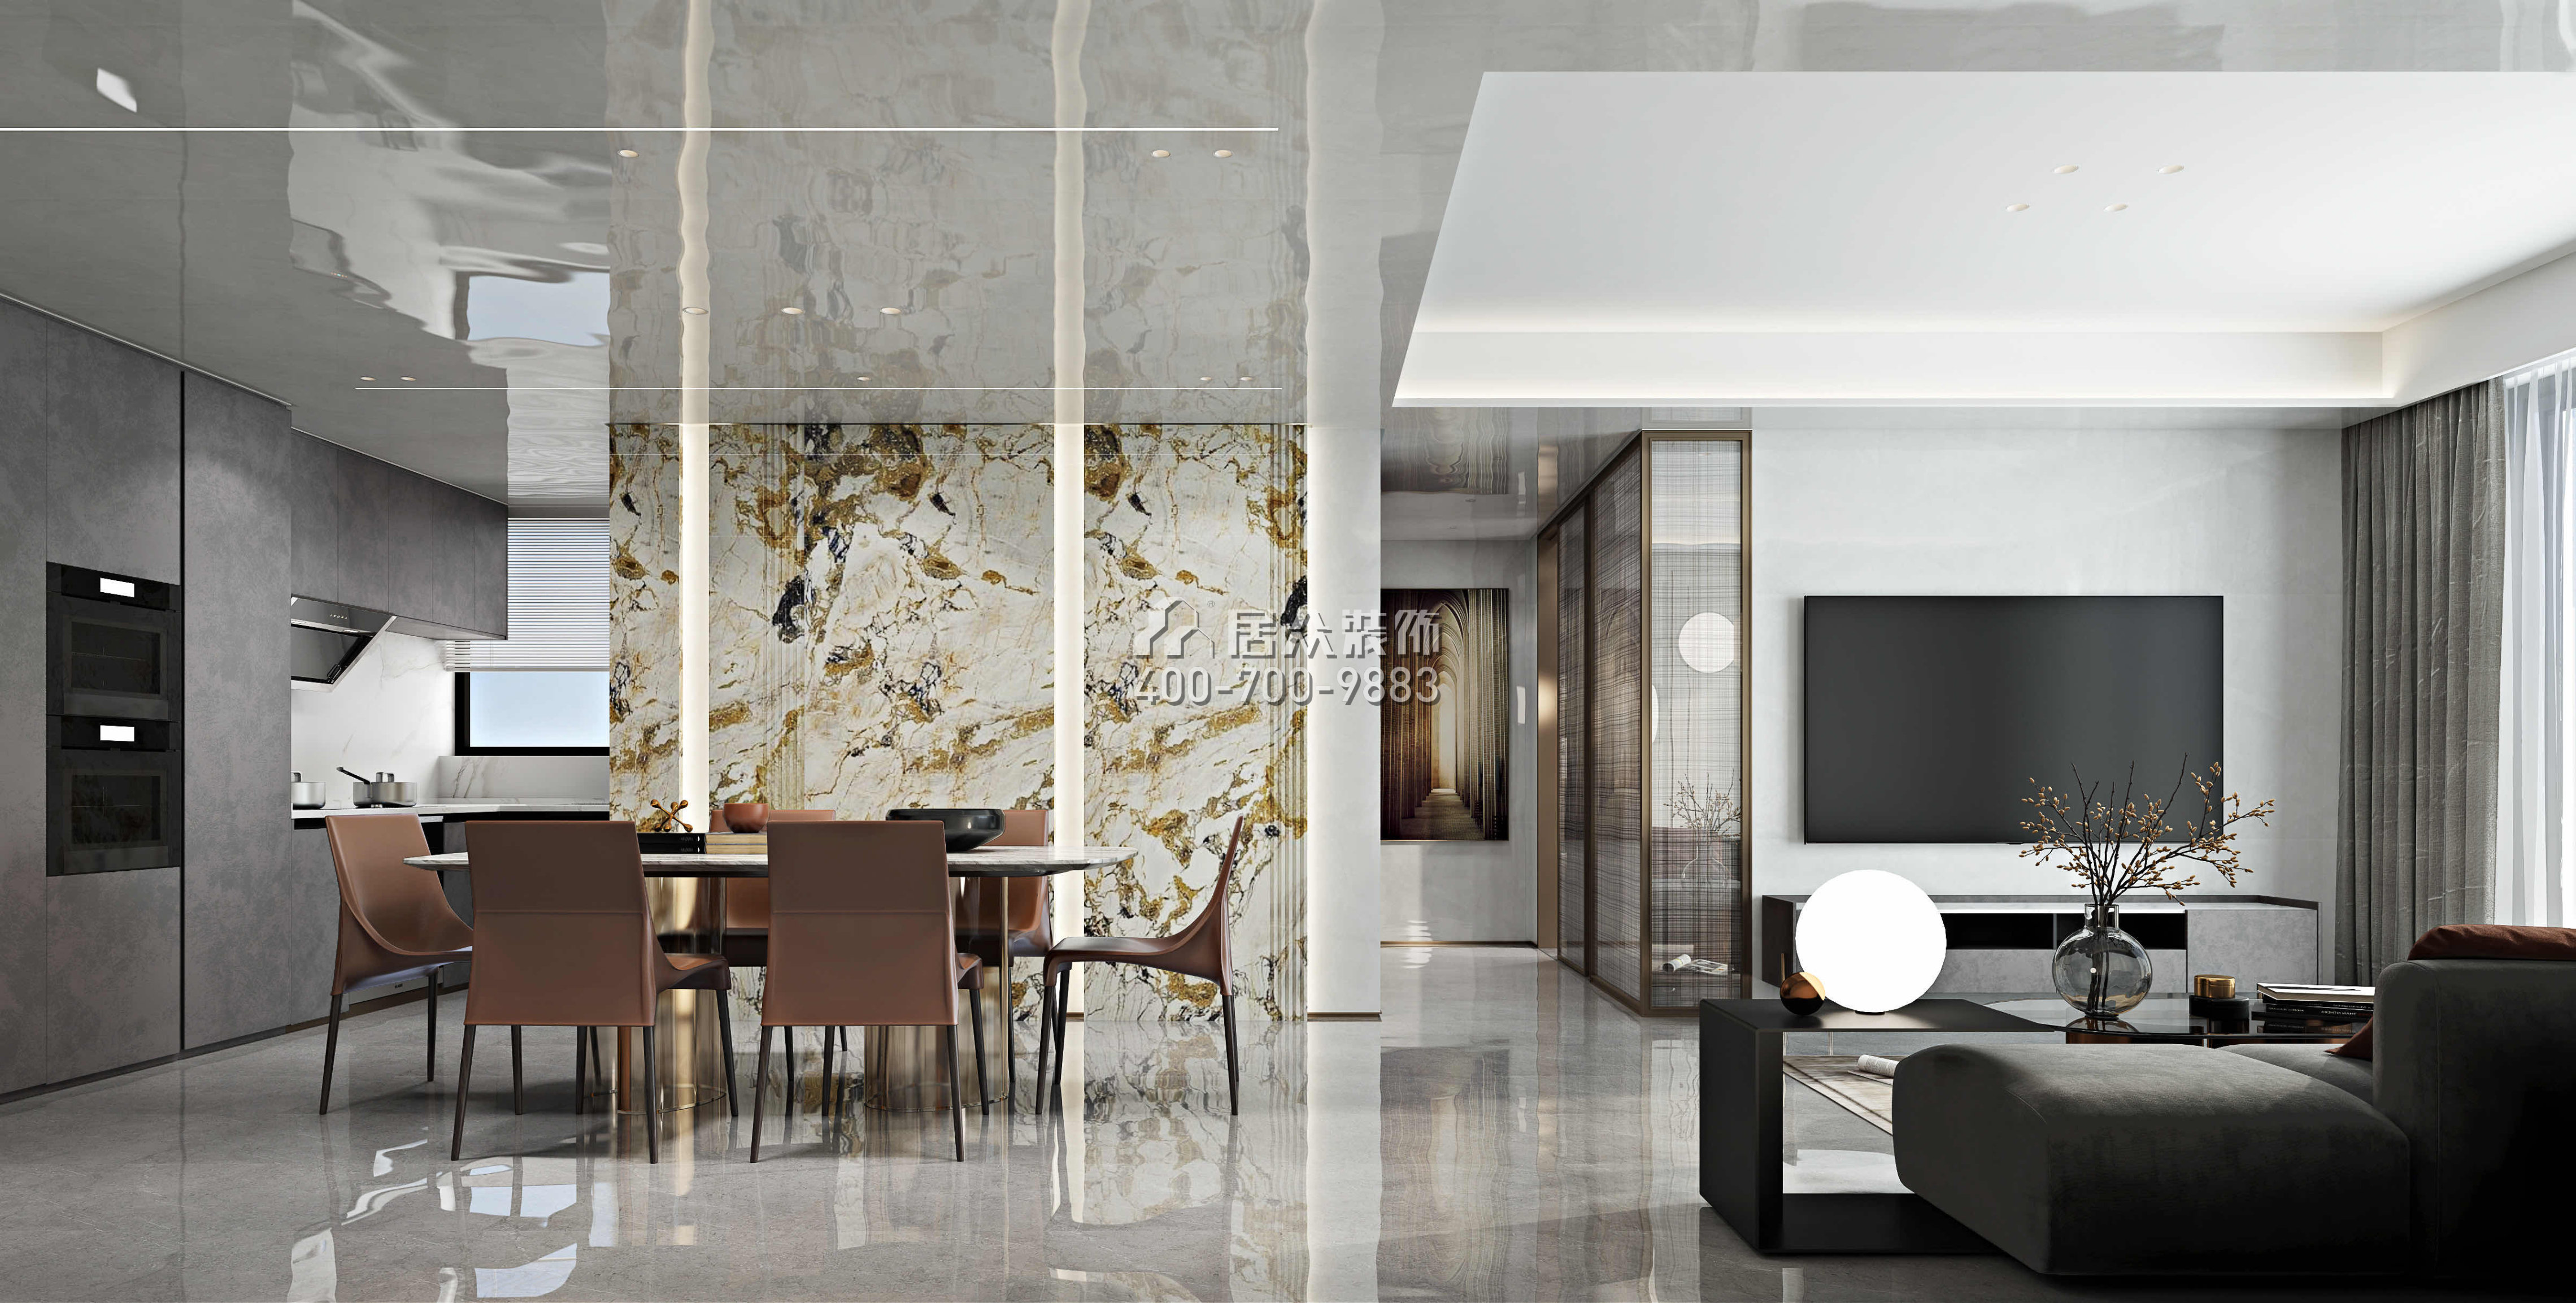 淘金山二期89平方米現代簡約風格平層戶型餐廳裝修效果圖